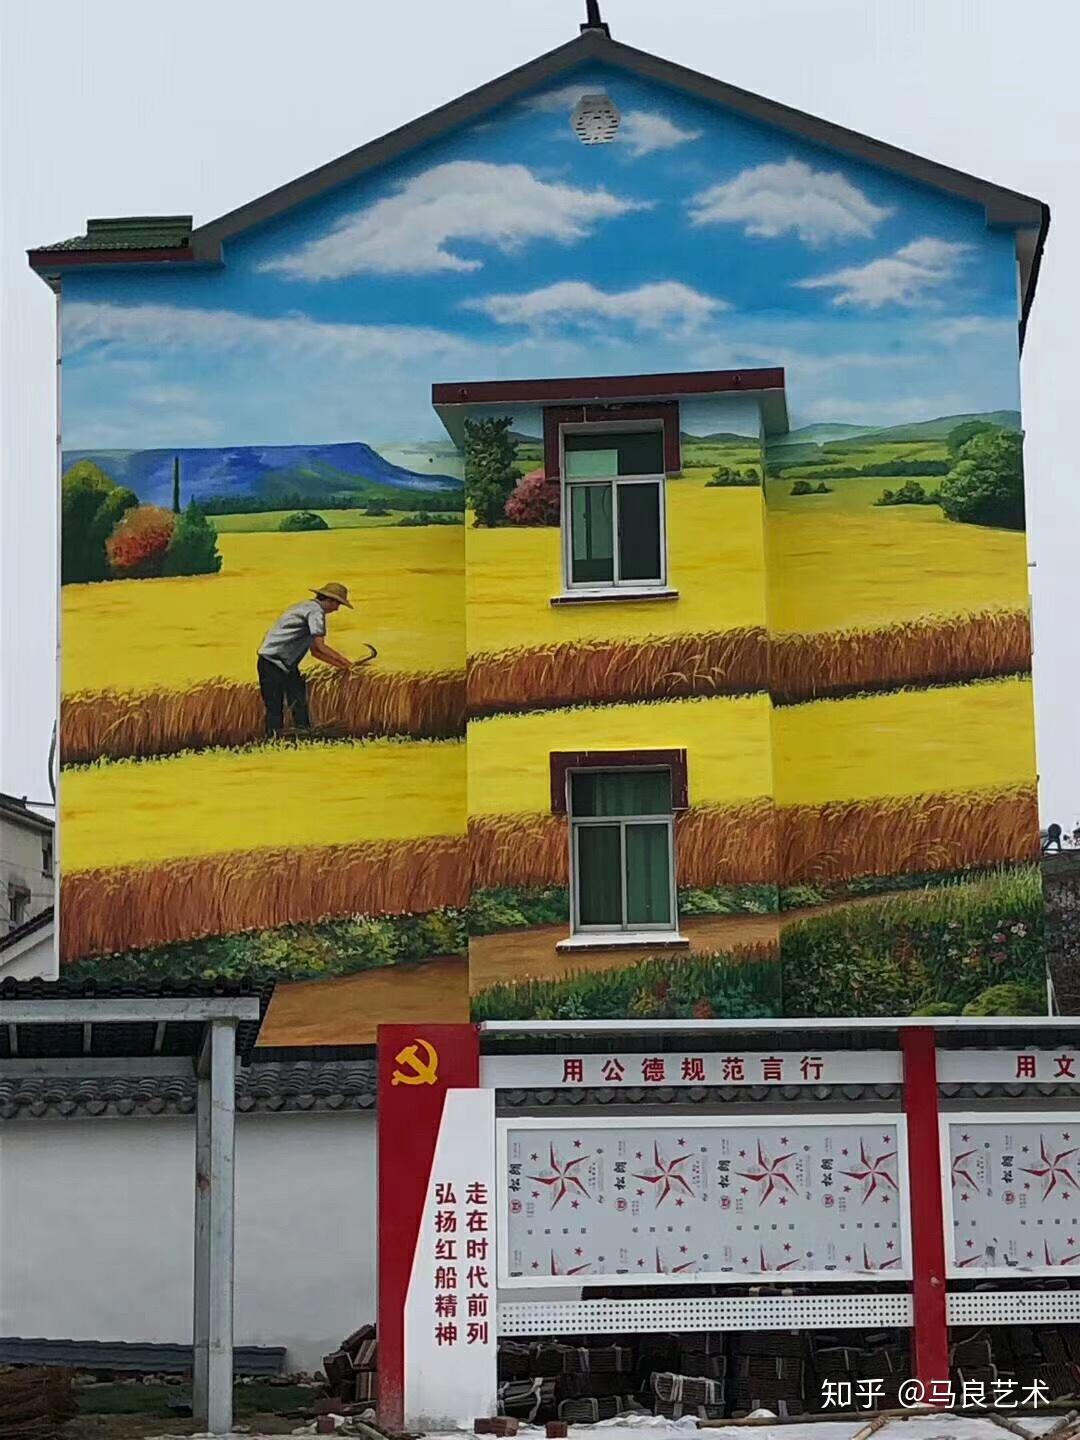 马良君今天带你参观一下江宁新农村建设,一幅幅美丽乡村的墙绘作品